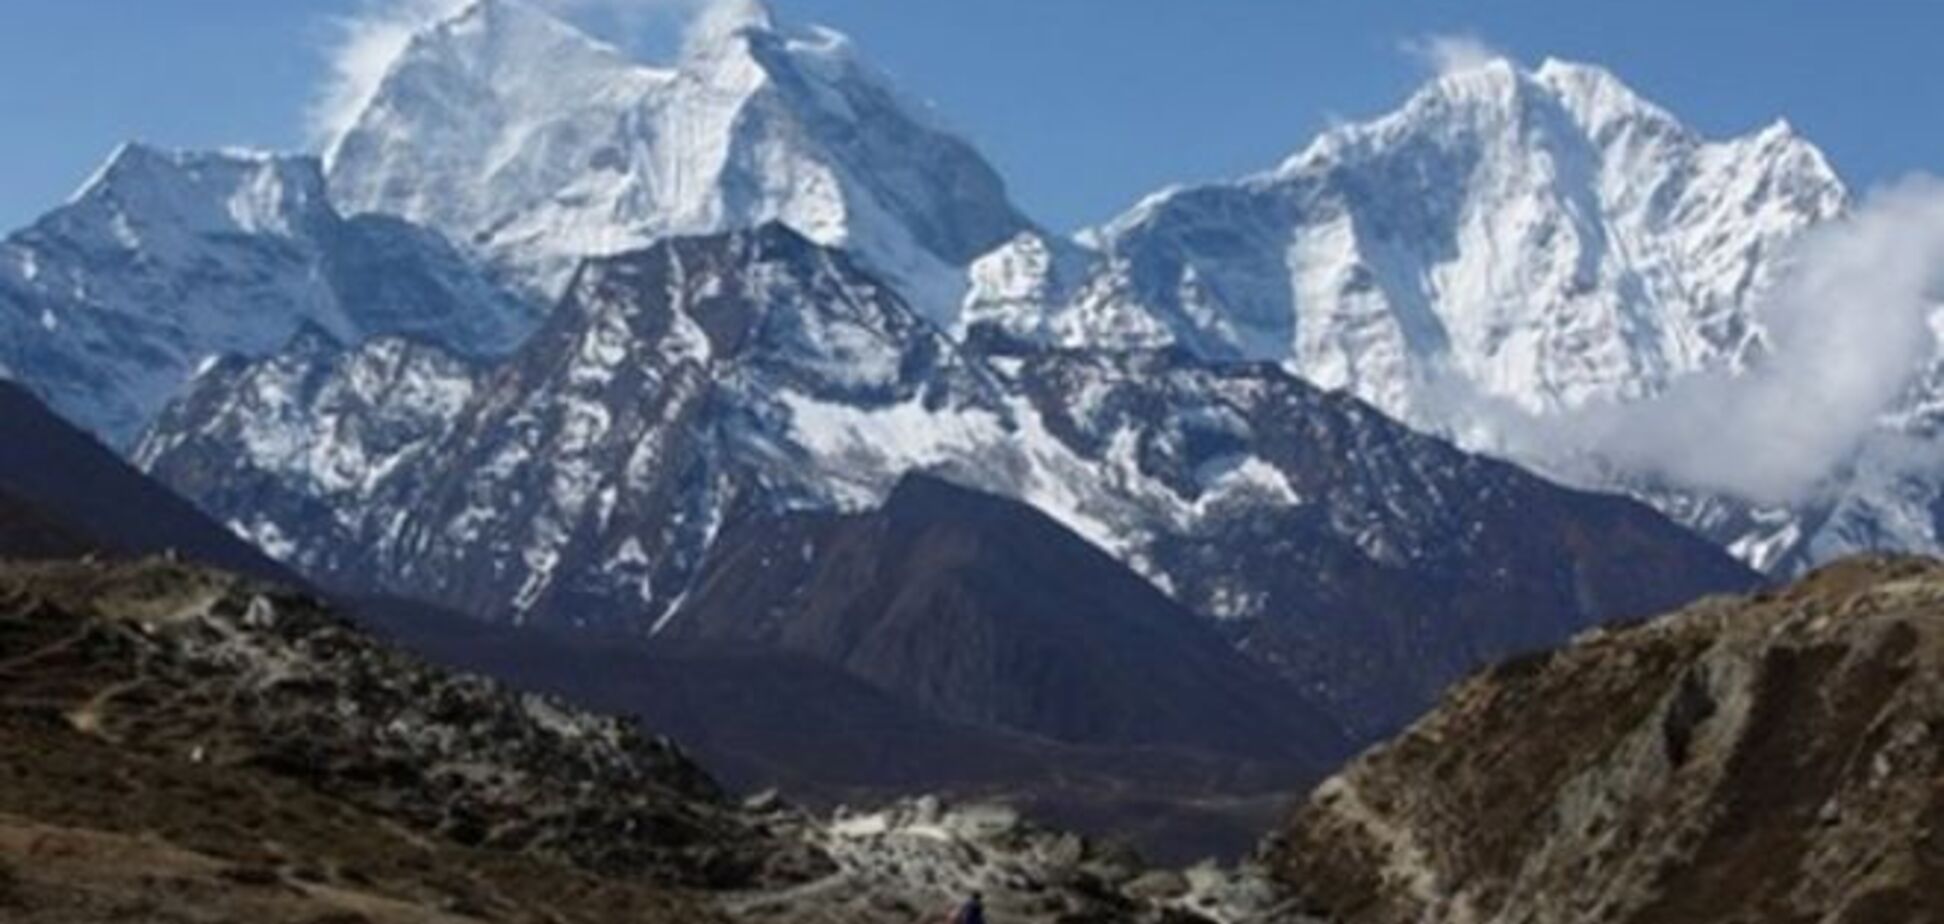 Землетрясение в Непале уменьшило высоту Эвереста